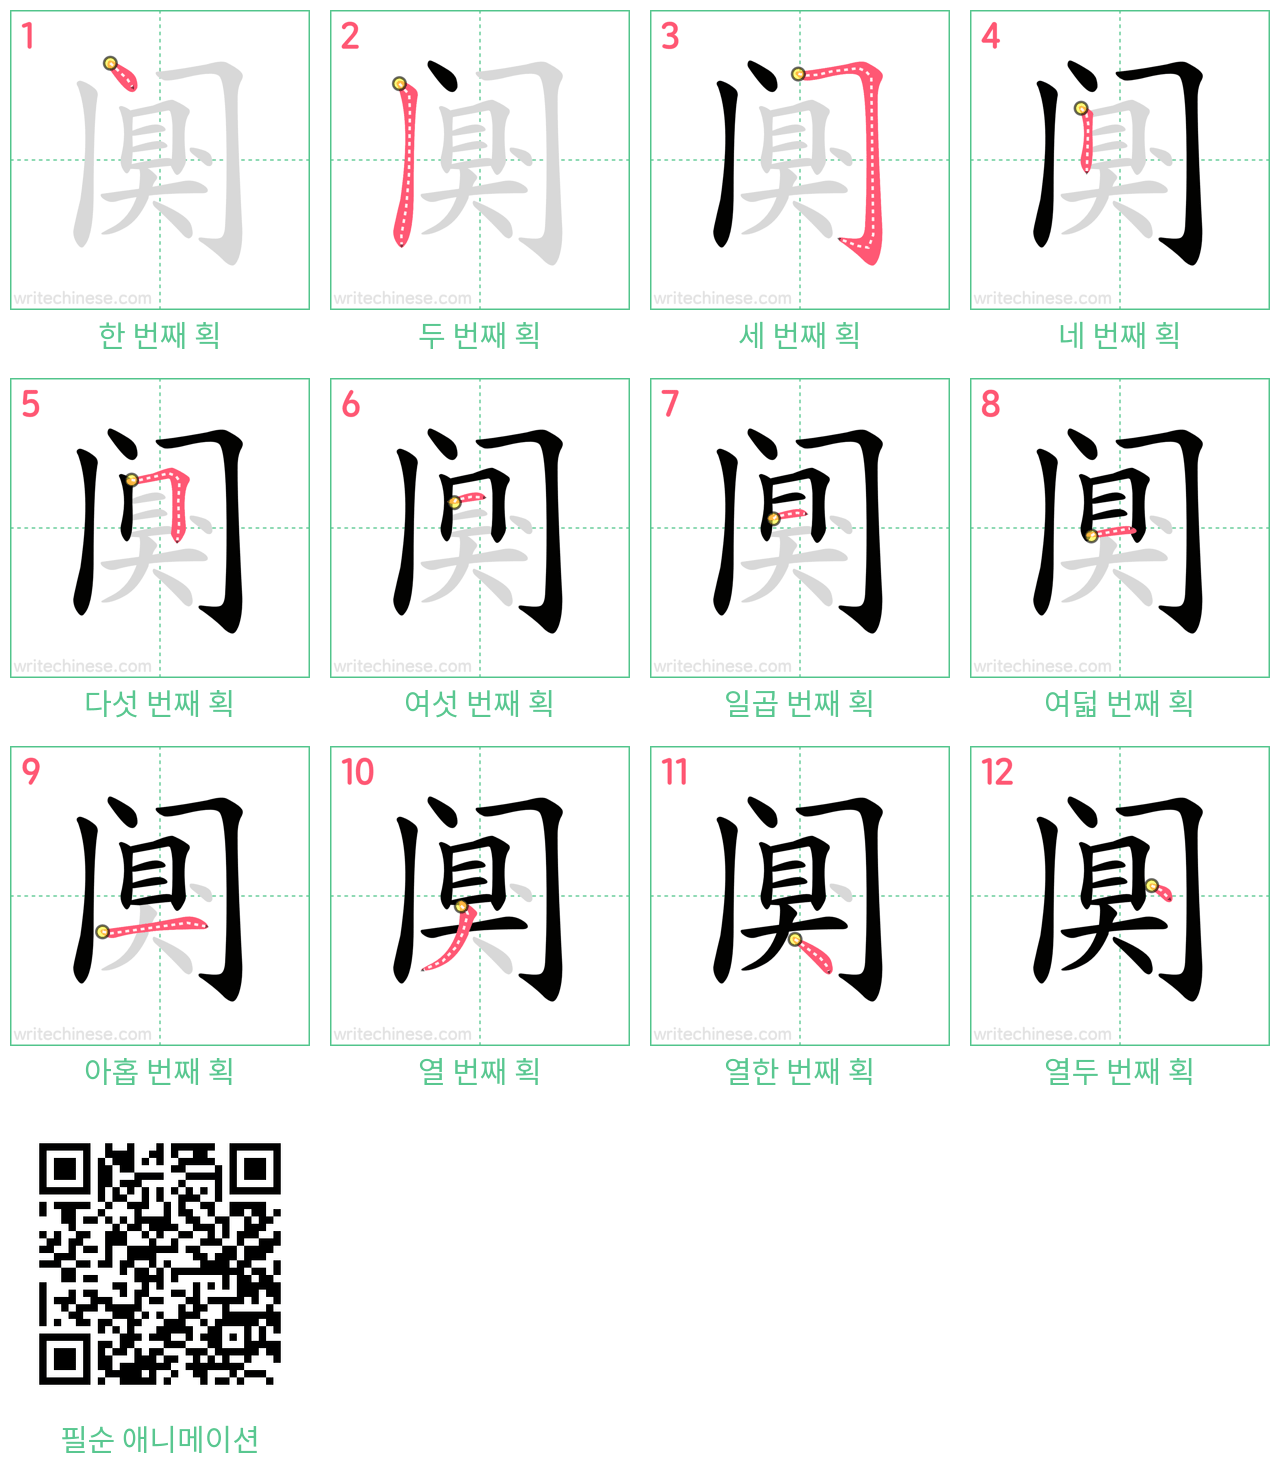 阒 step-by-step stroke order diagrams